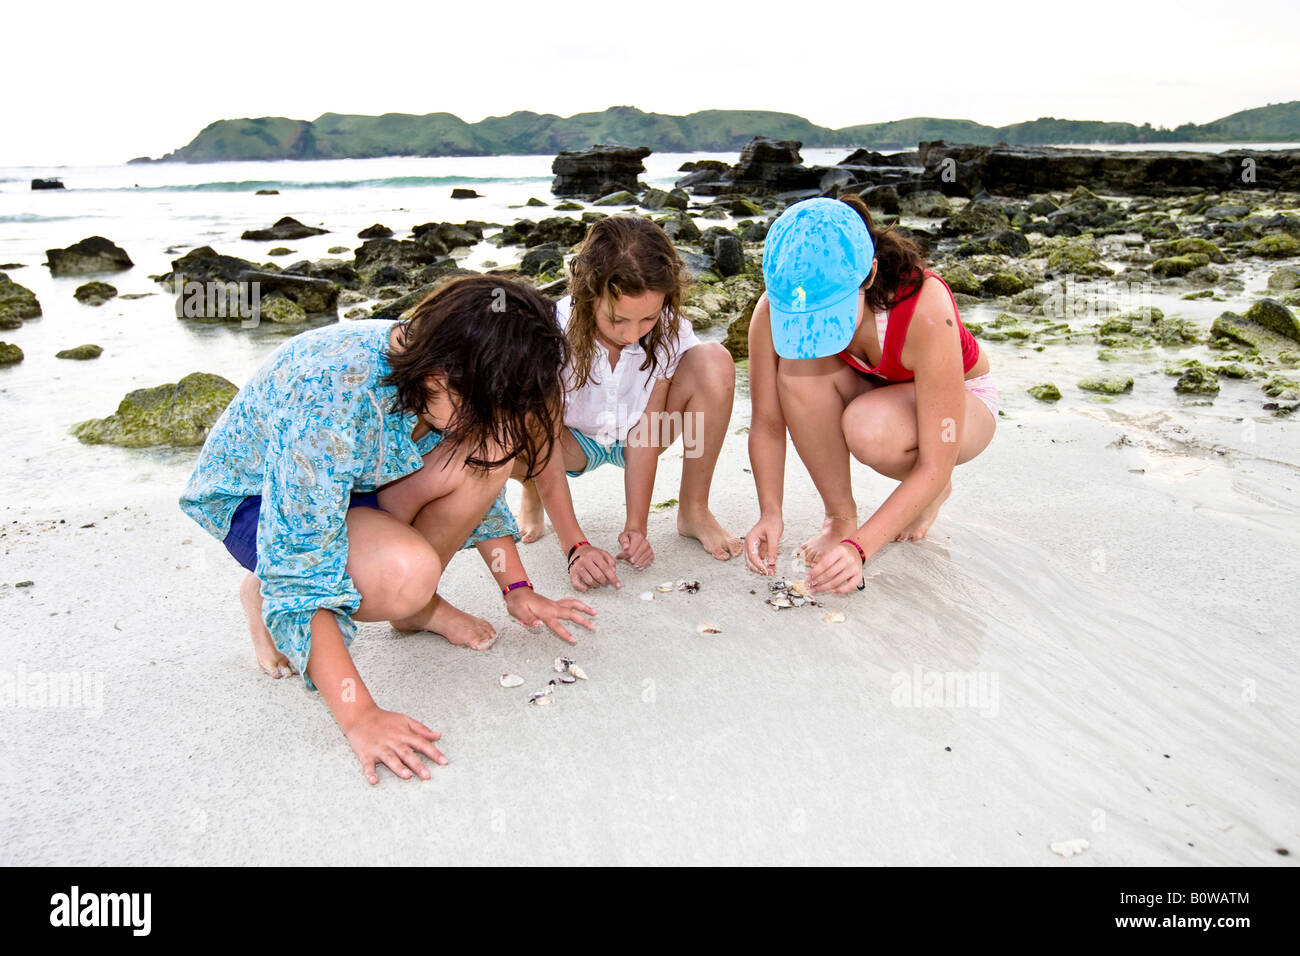 Los niños buscando conchas y arrecifes a lo largo de una playa desierta, la isla de Lombok, Lesser Sunda Islands, Indonesia Foto de stock